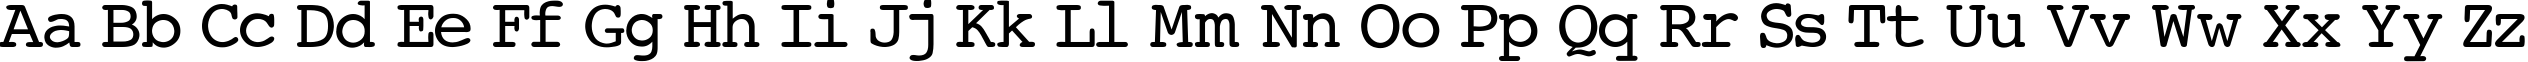 Пример написания английского алфавита шрифтом Courier-Normal